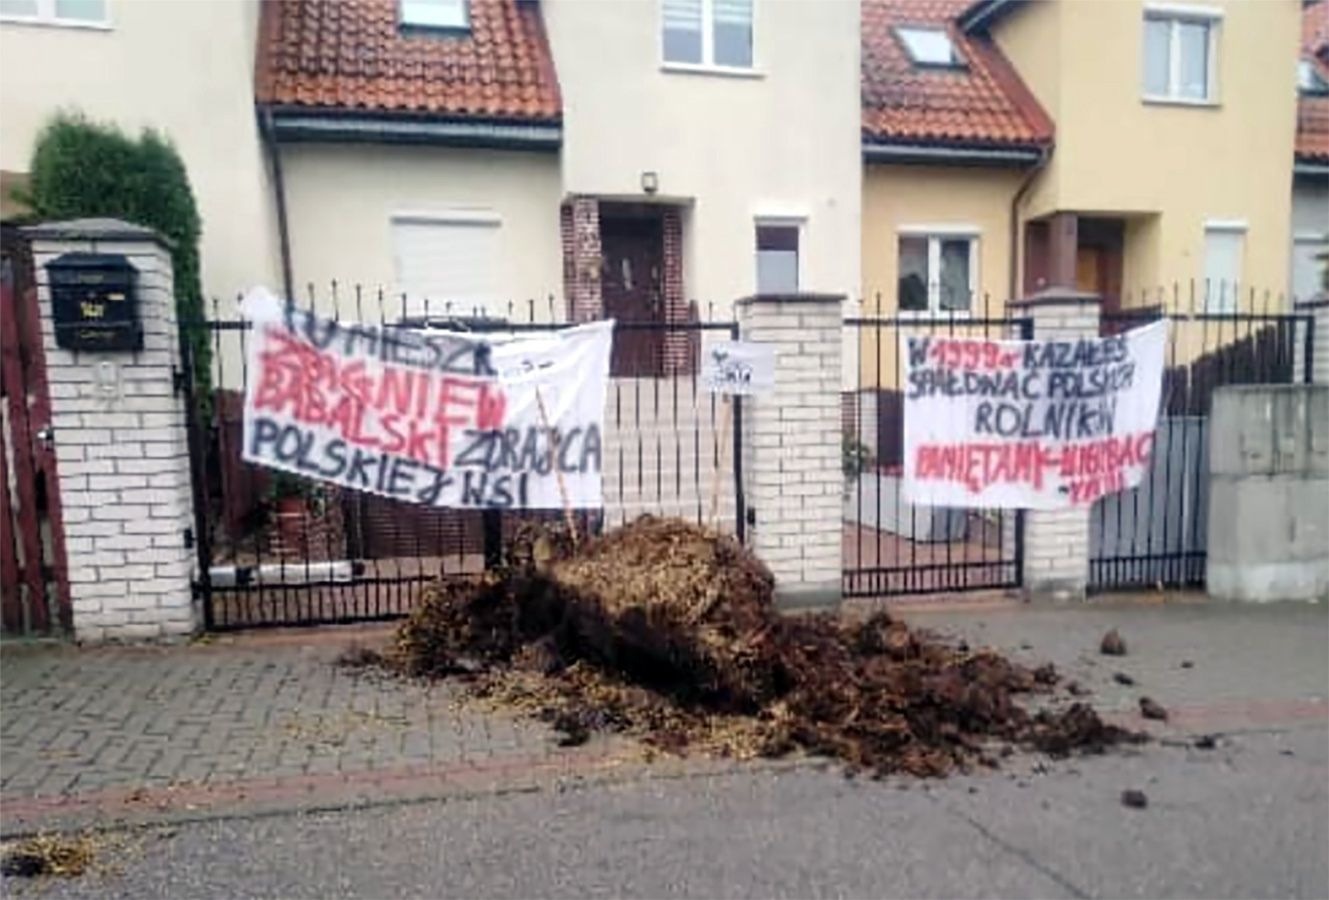 "Zdradzili polską wieś". Rolnicy zrzucili odchody przed domami posłów